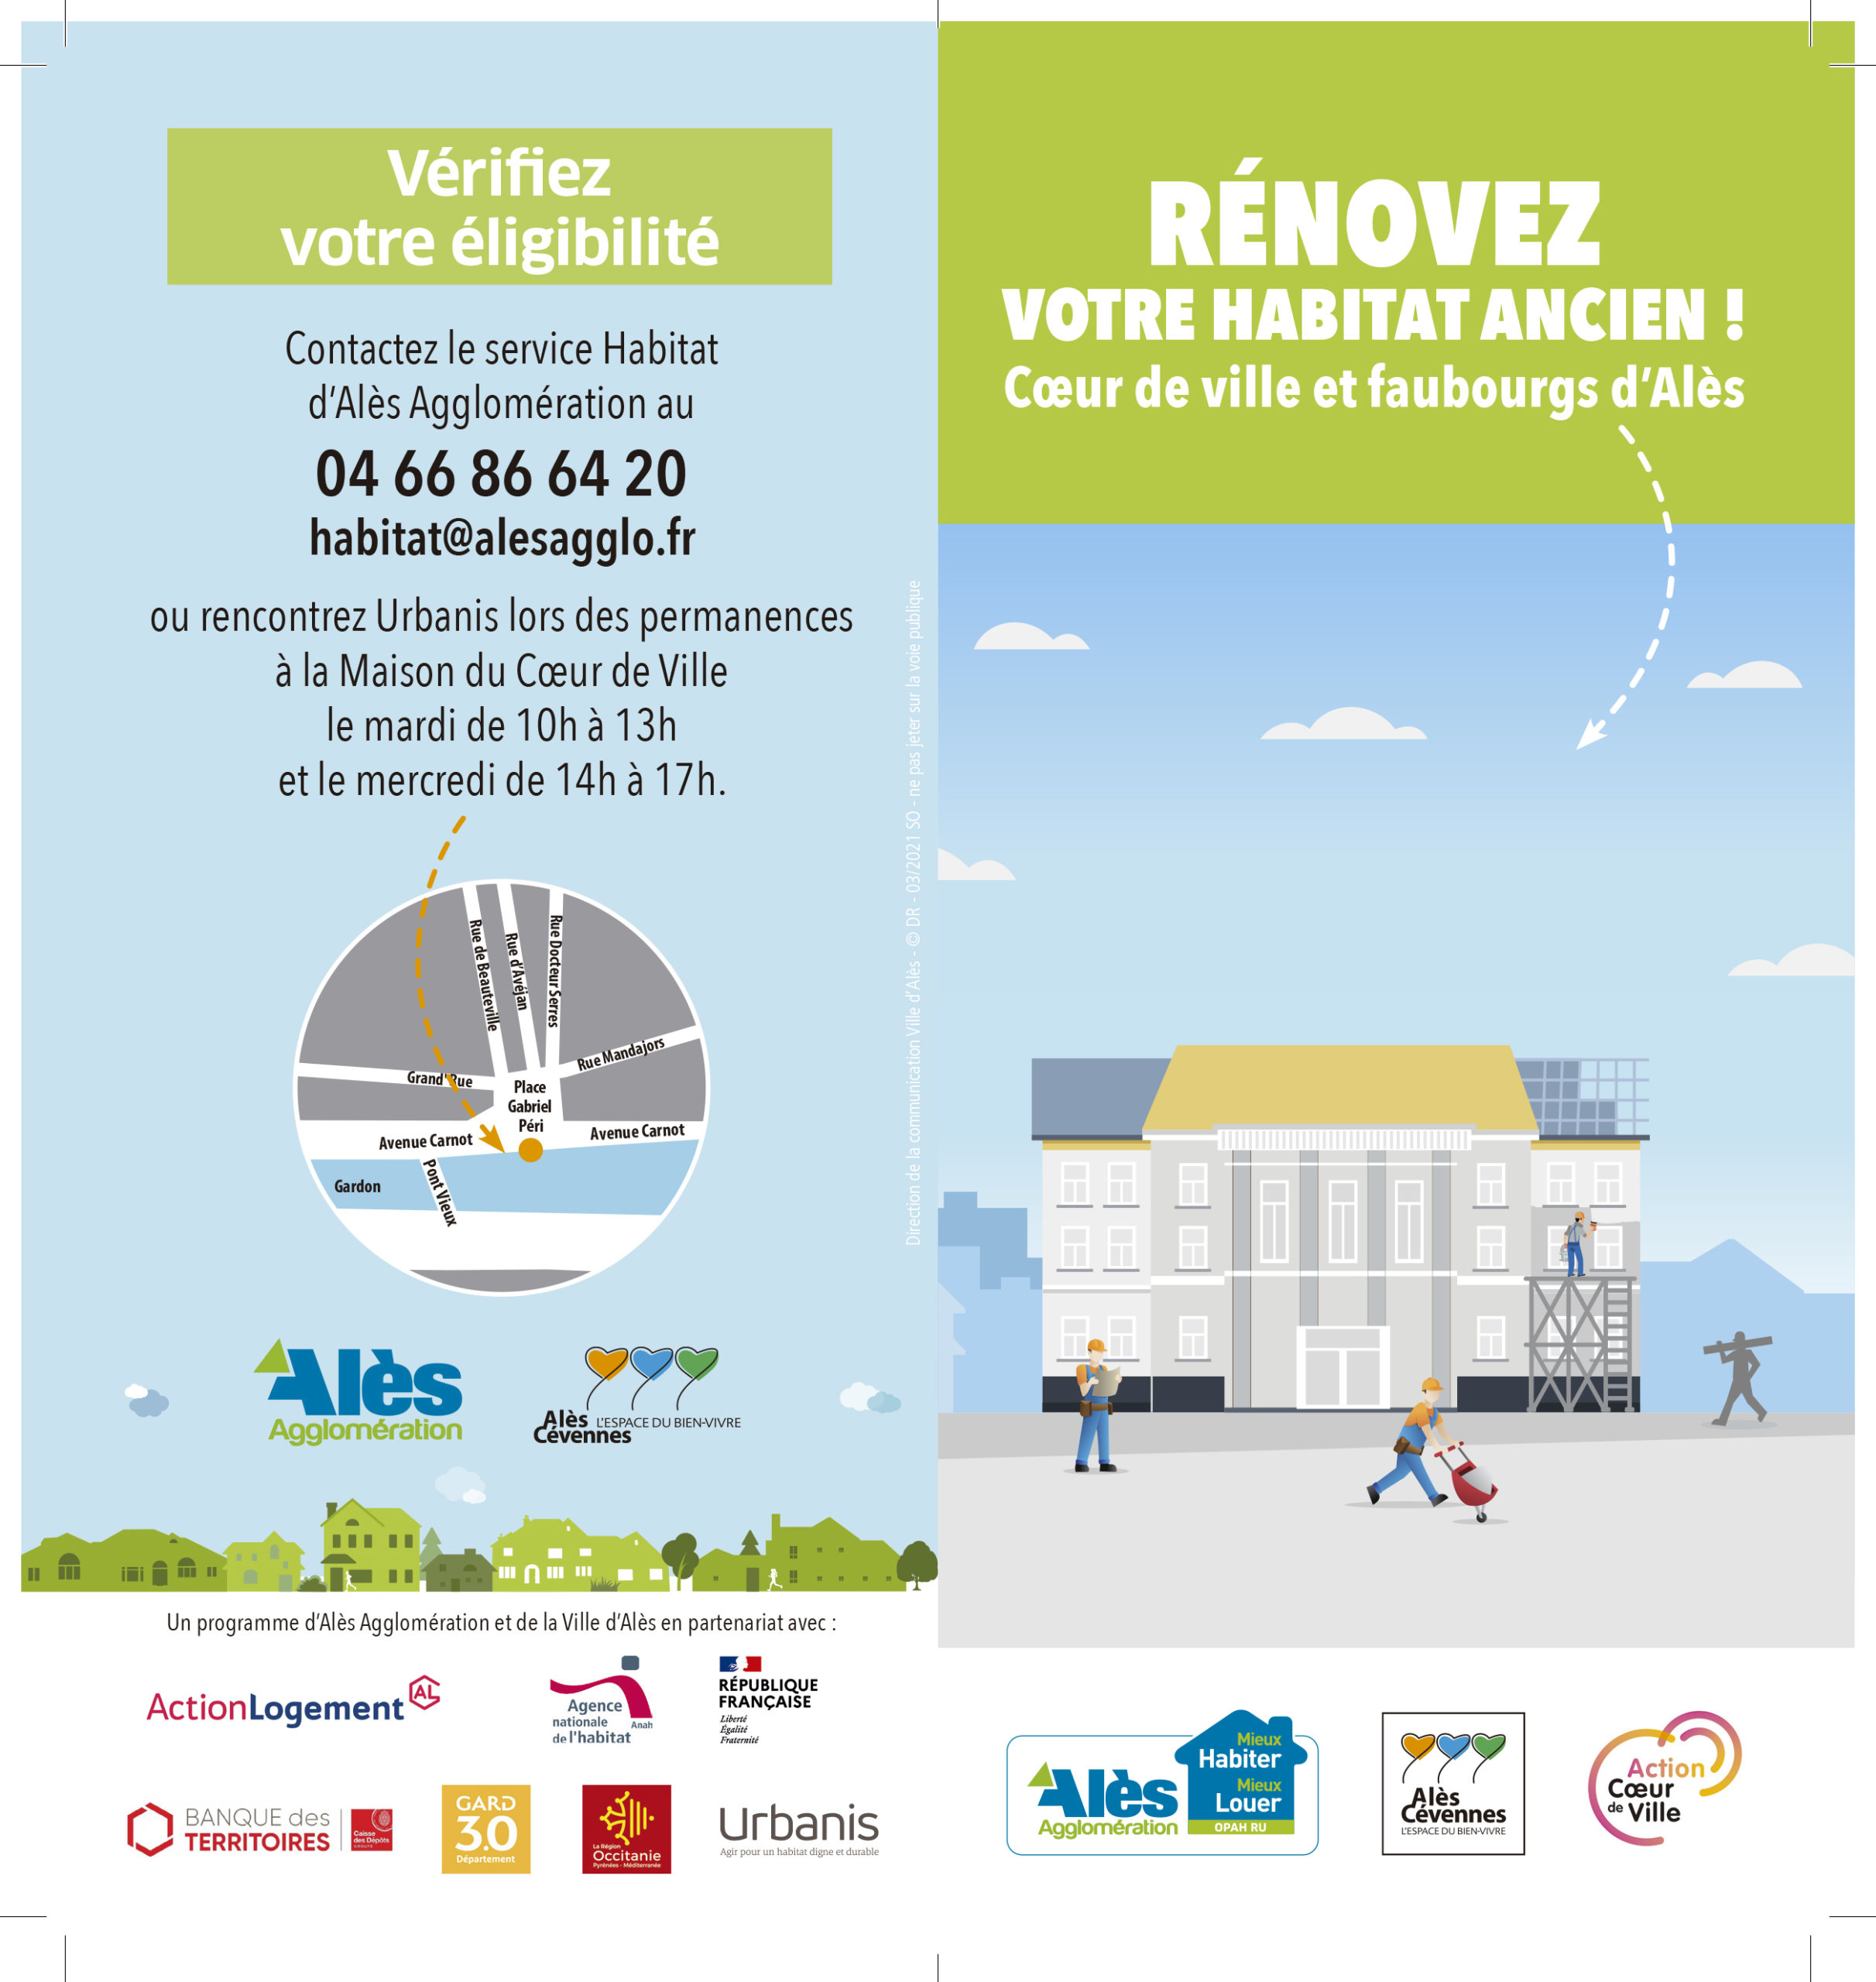 Lancement de l’opération « Rénovez votre habitat ancien » en cœur de ville et faubourgs d’Alès